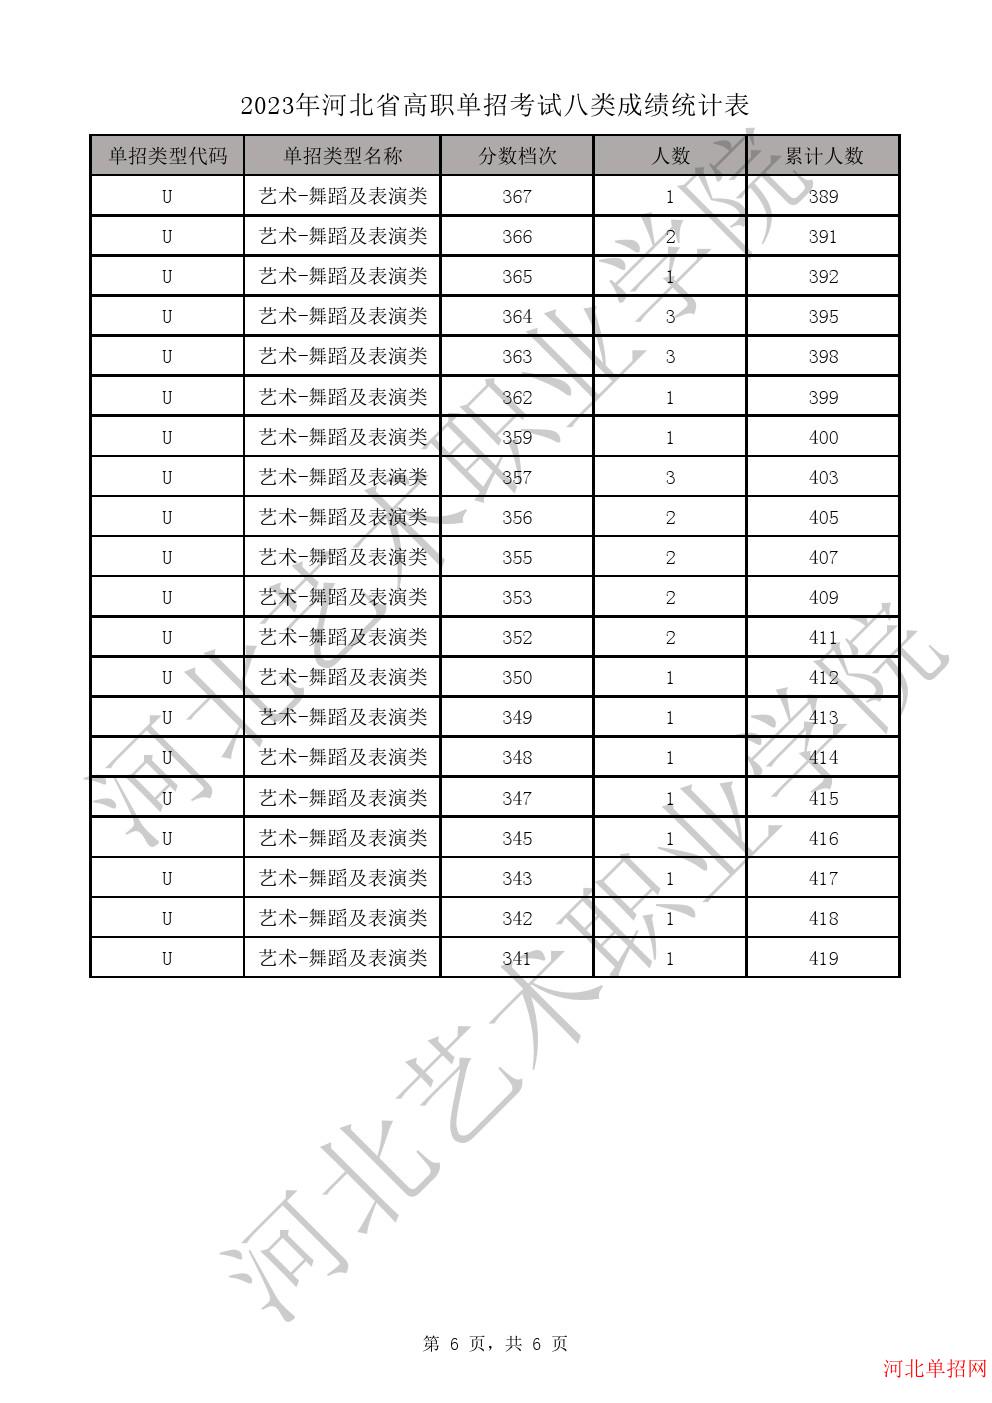 2023年河北省高职单招考试八类成绩统计表-U艺术-舞蹈及表演类一分一档表 图6